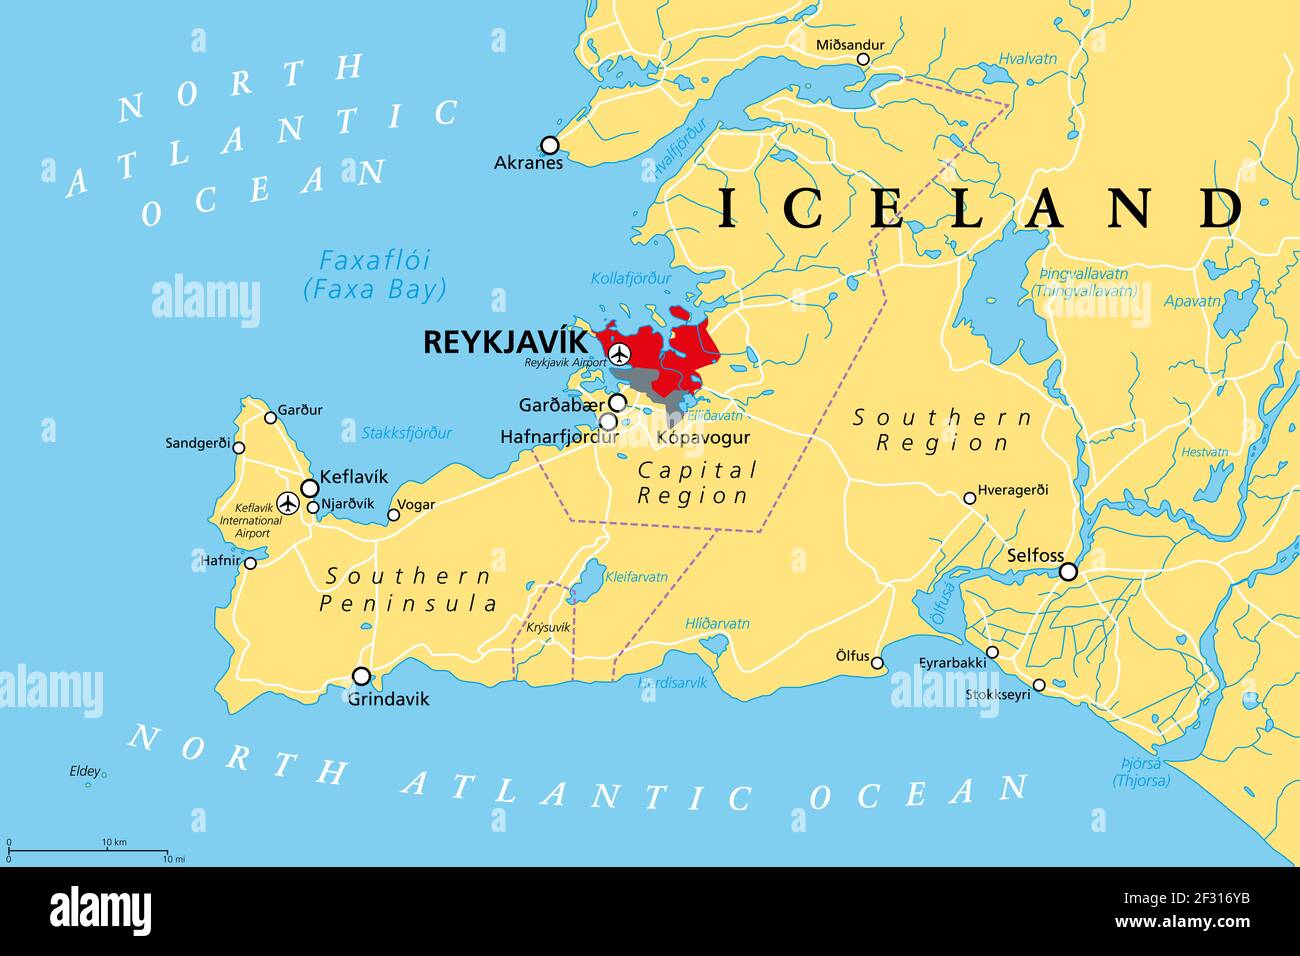 Islande, région de la capitale et péninsule du Sud, carte politique. Reykjavik et ses environs, avec la péninsule de Reykjanes, une région du sud-ouest de l'Islande. Banque D'Images